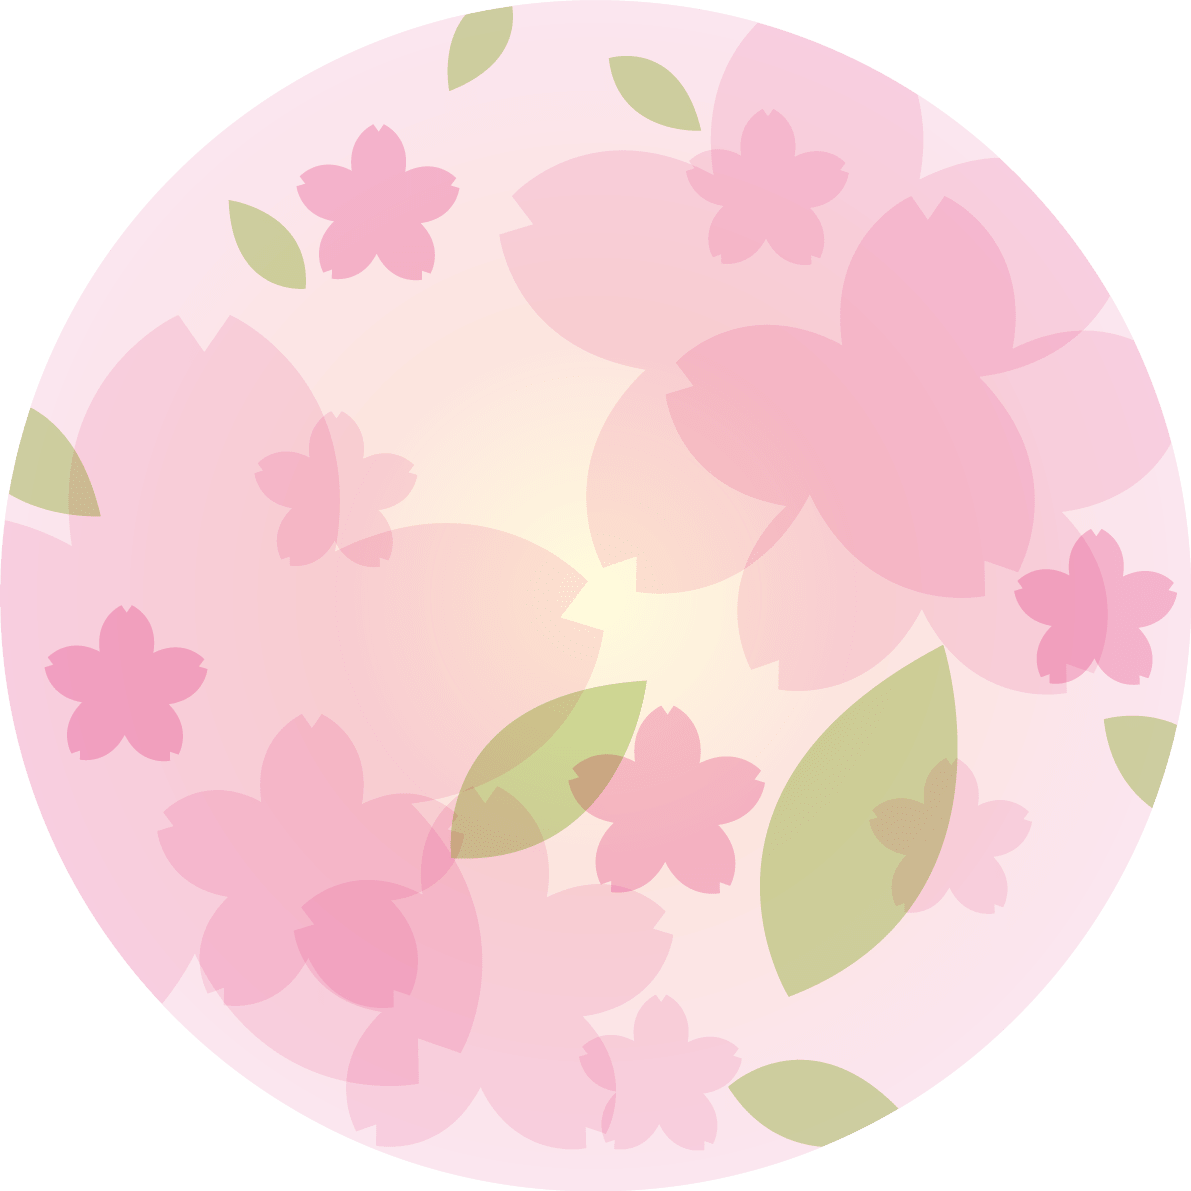 円の中で重なり合う桜イラスト ワンポイント フリー イラスト素材 超多くの無料かわいいイラスト素材